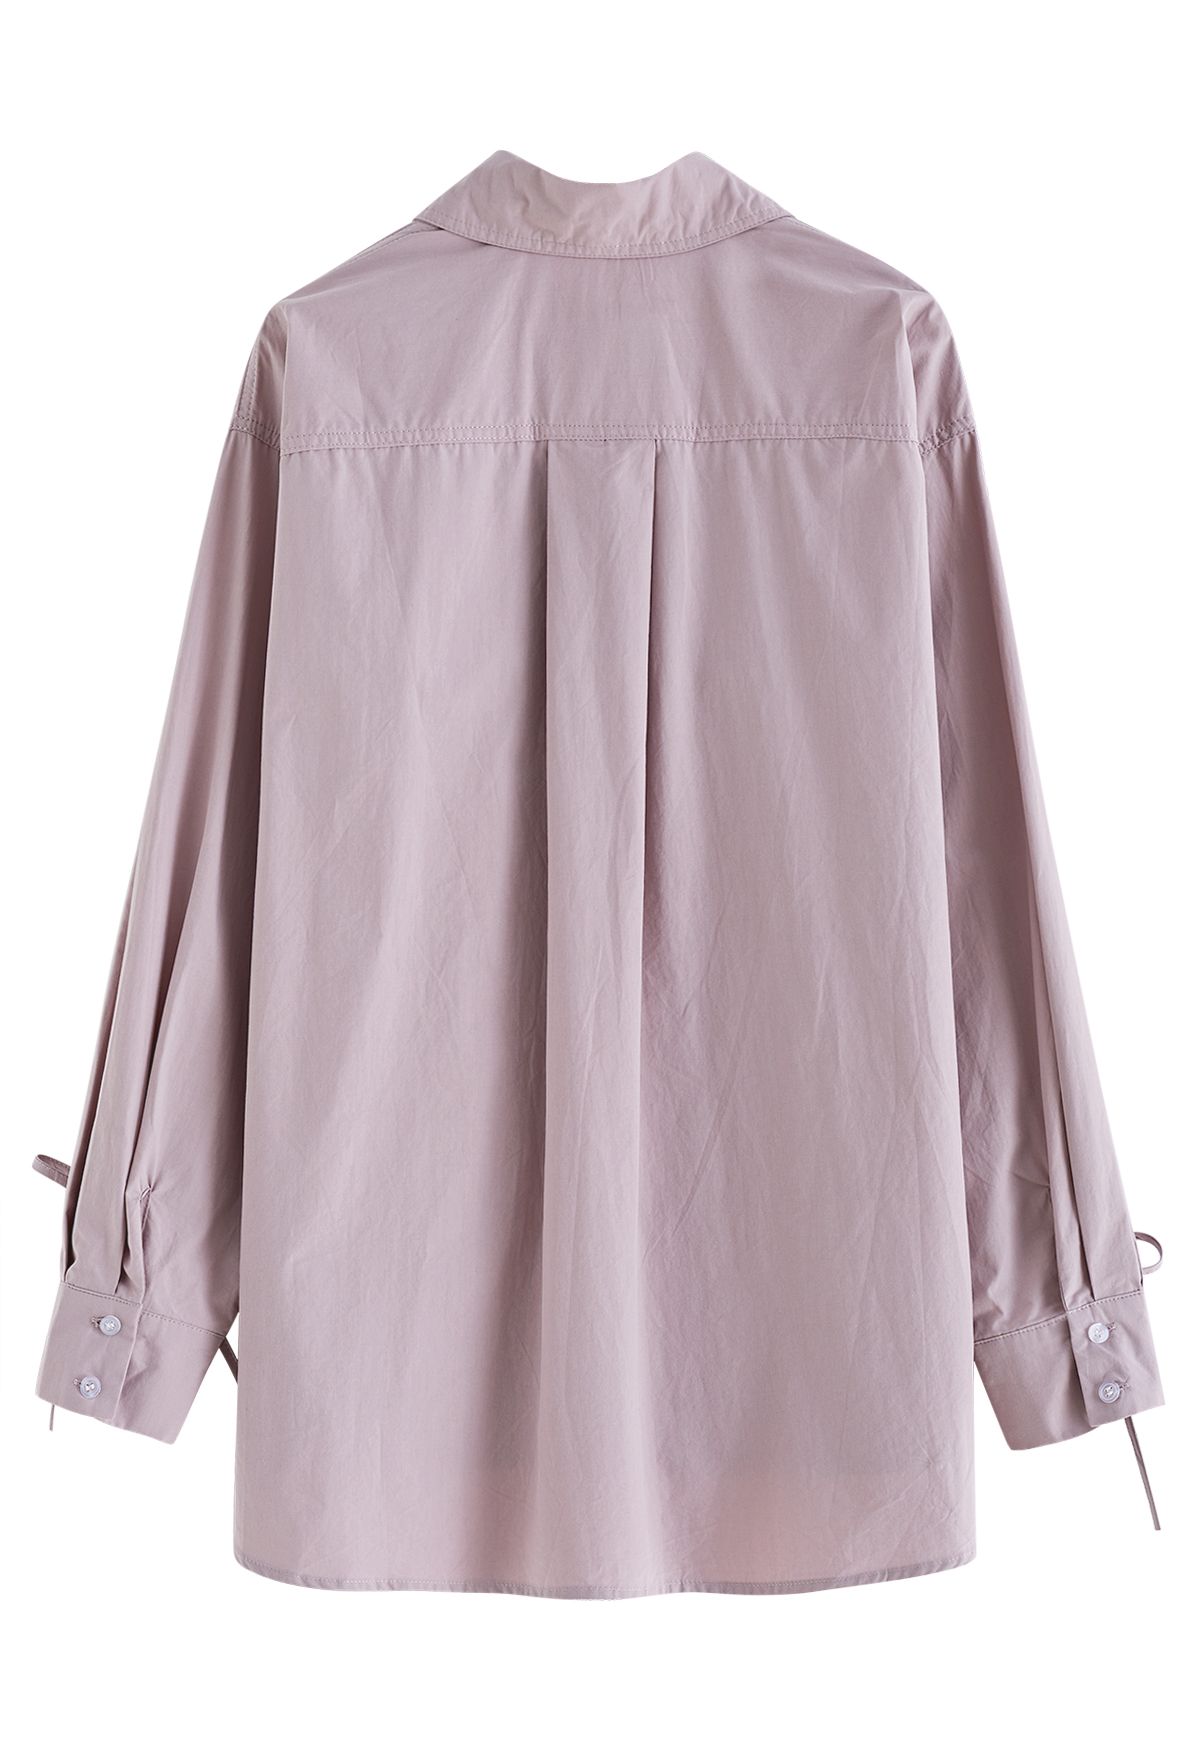 Camisa de algodão com botões e mangas com cordão em rosa empoeirado